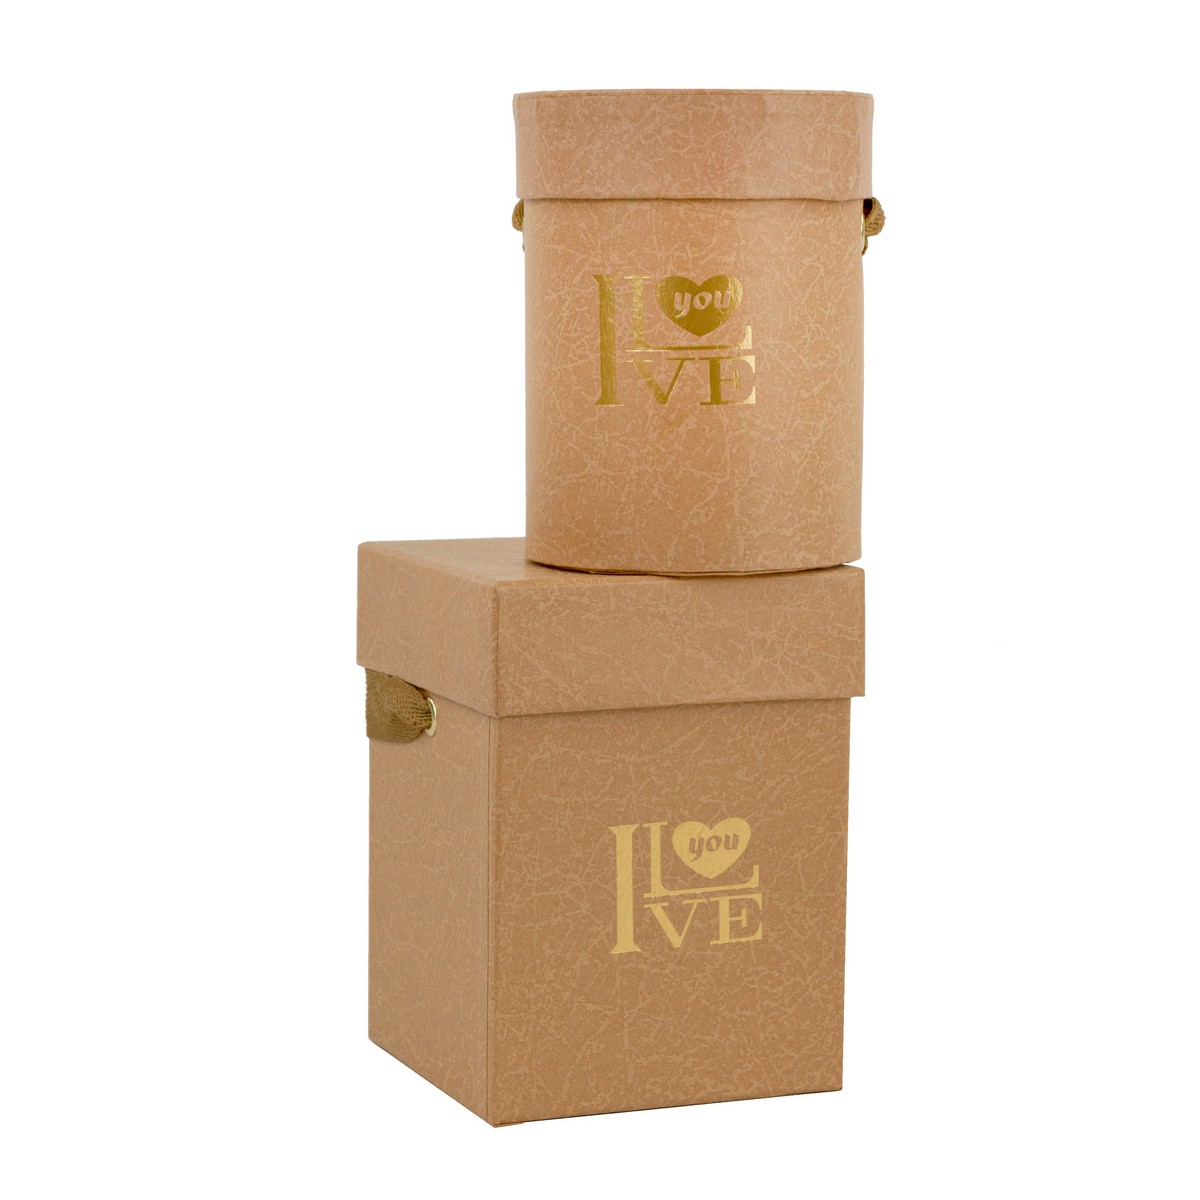 Y027KHA, Набор коробок подарочных Ассорти 2шт., 9,8x9,8xH13,2 см, кремовый, 2009980177199